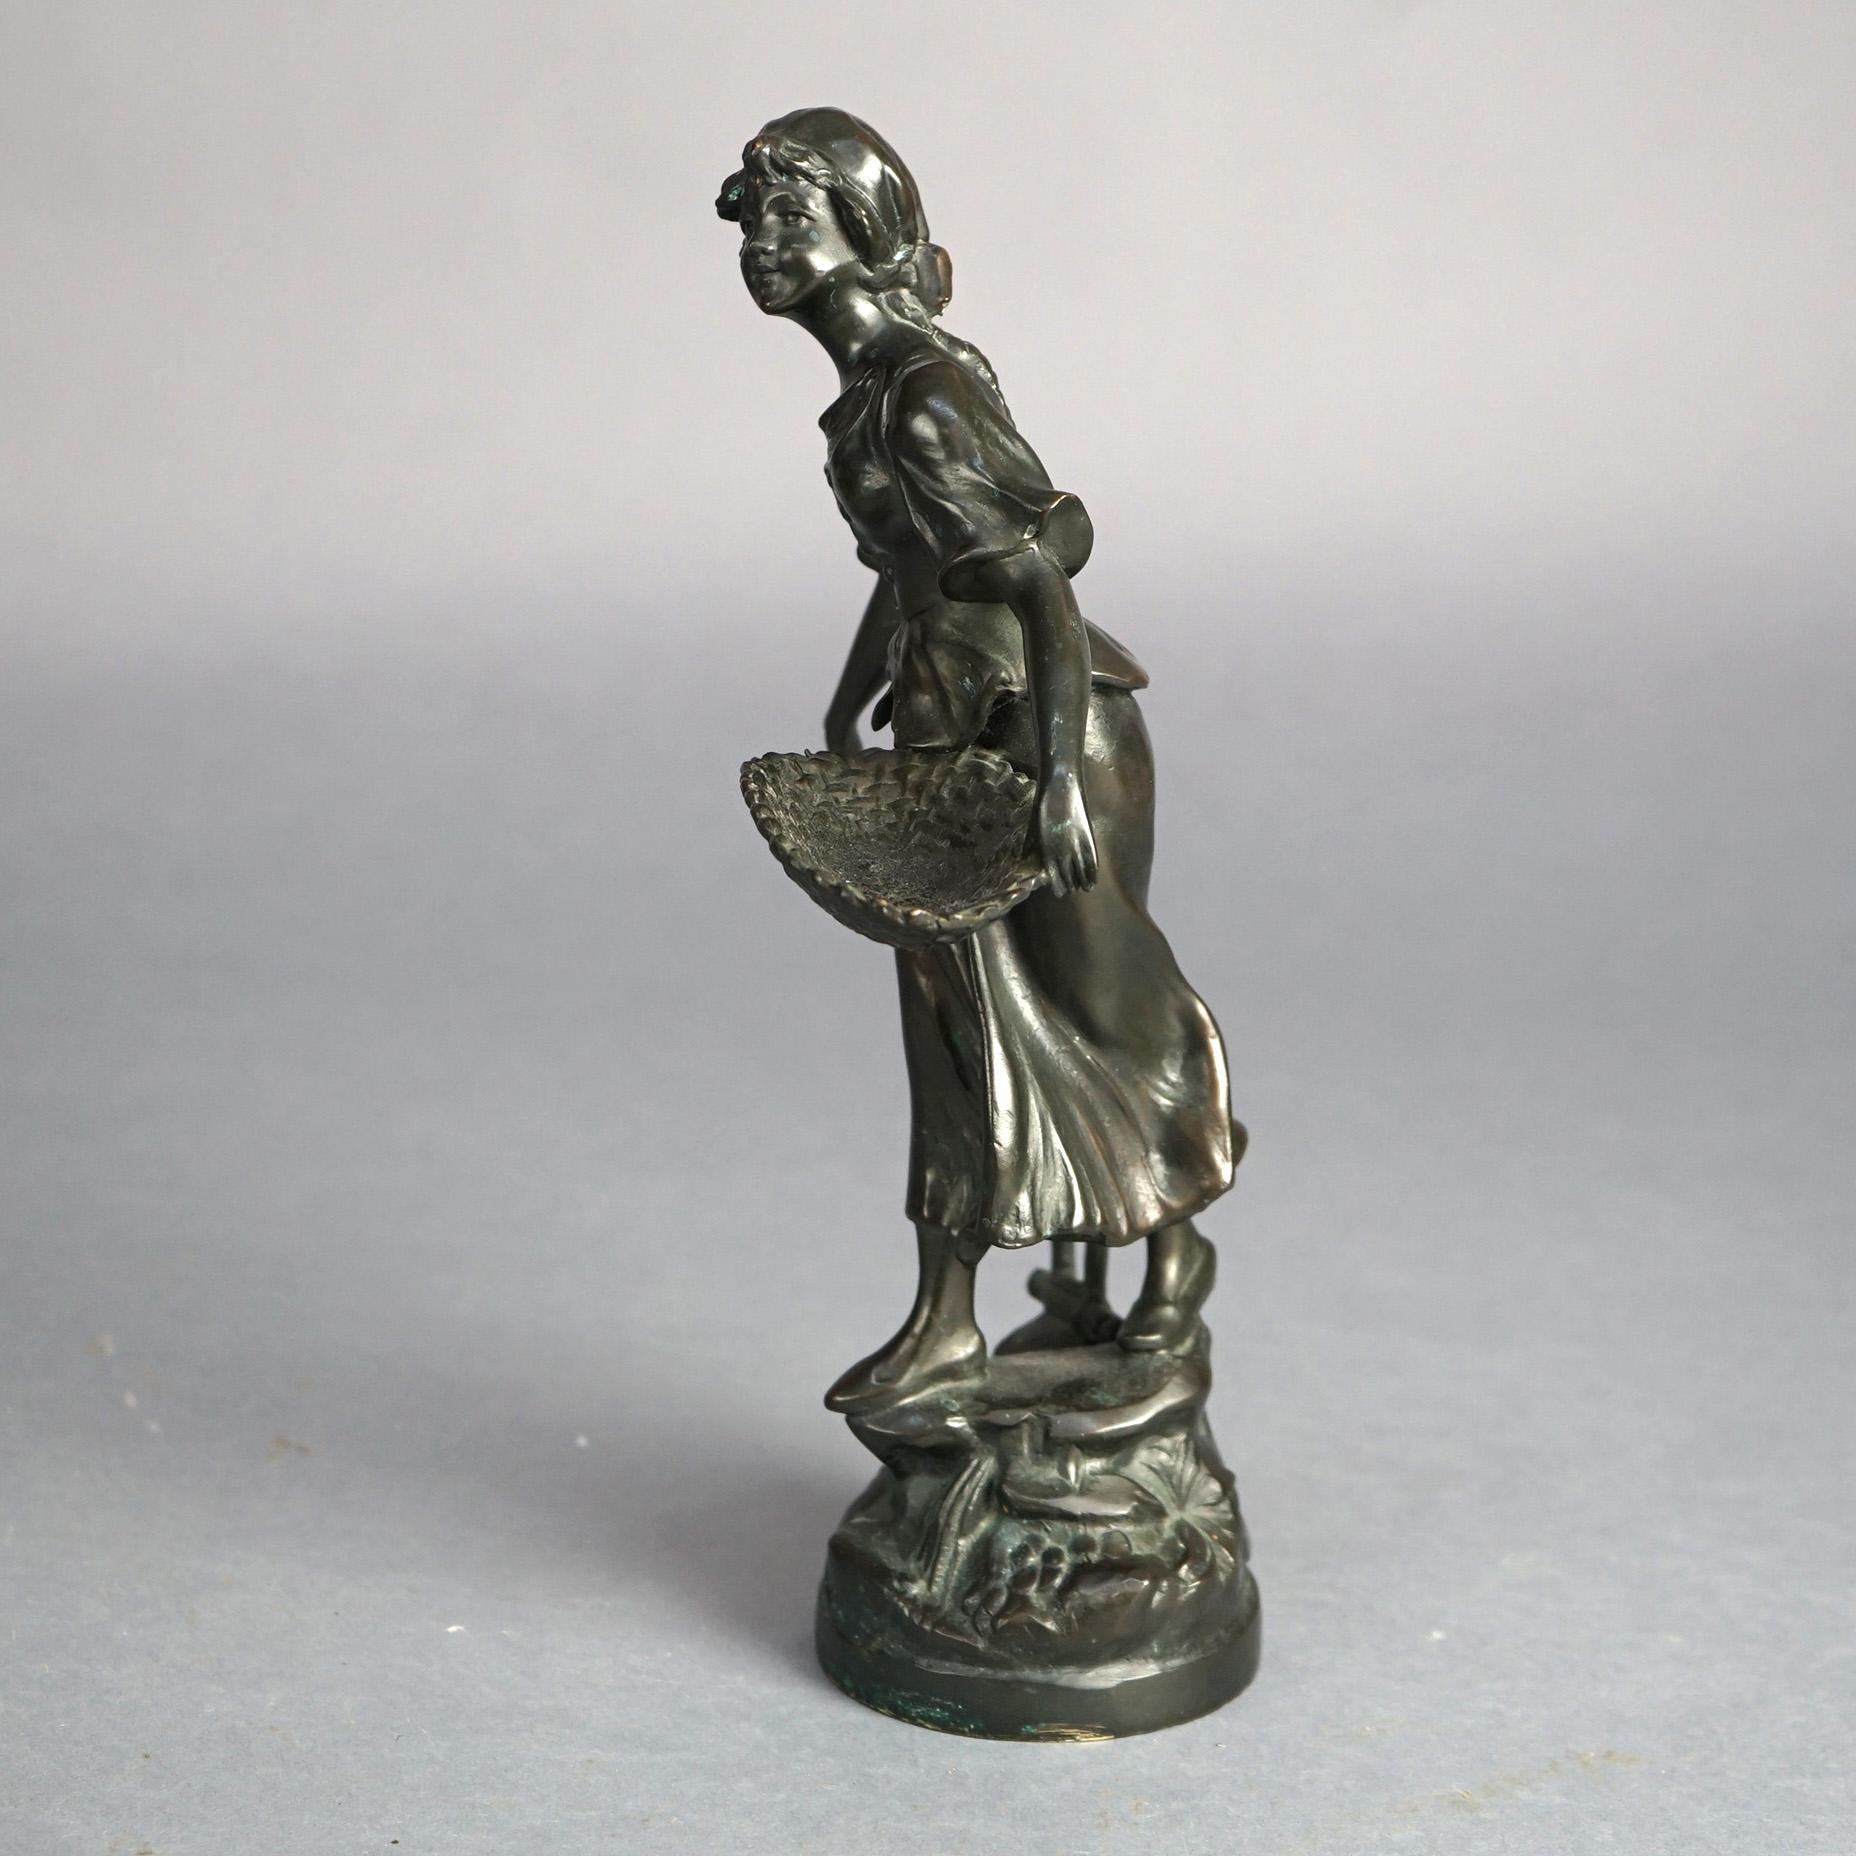 Antike figurale gegossene Bronzestatue eines Erntemädchens in ländlicher Umgebung mit Gießereimarke AL 468 C1900

Maße: 12''H x 6,5''B x 4,5''D